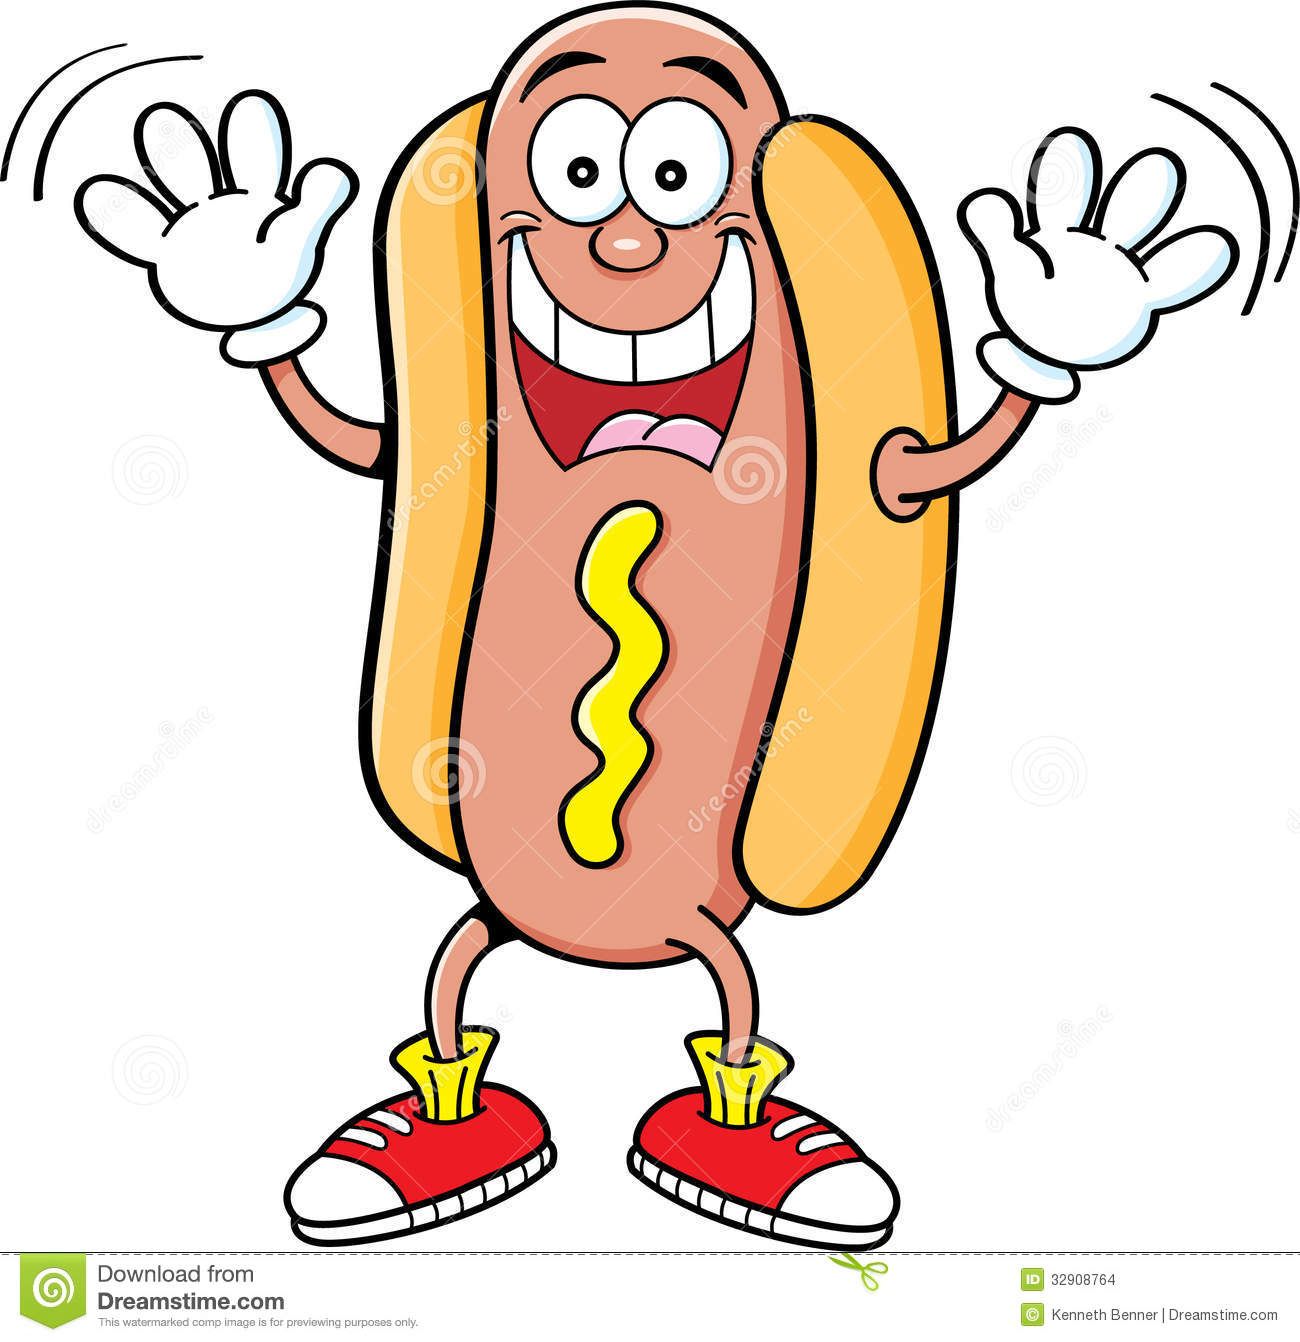 Cartoon hotdog waving.